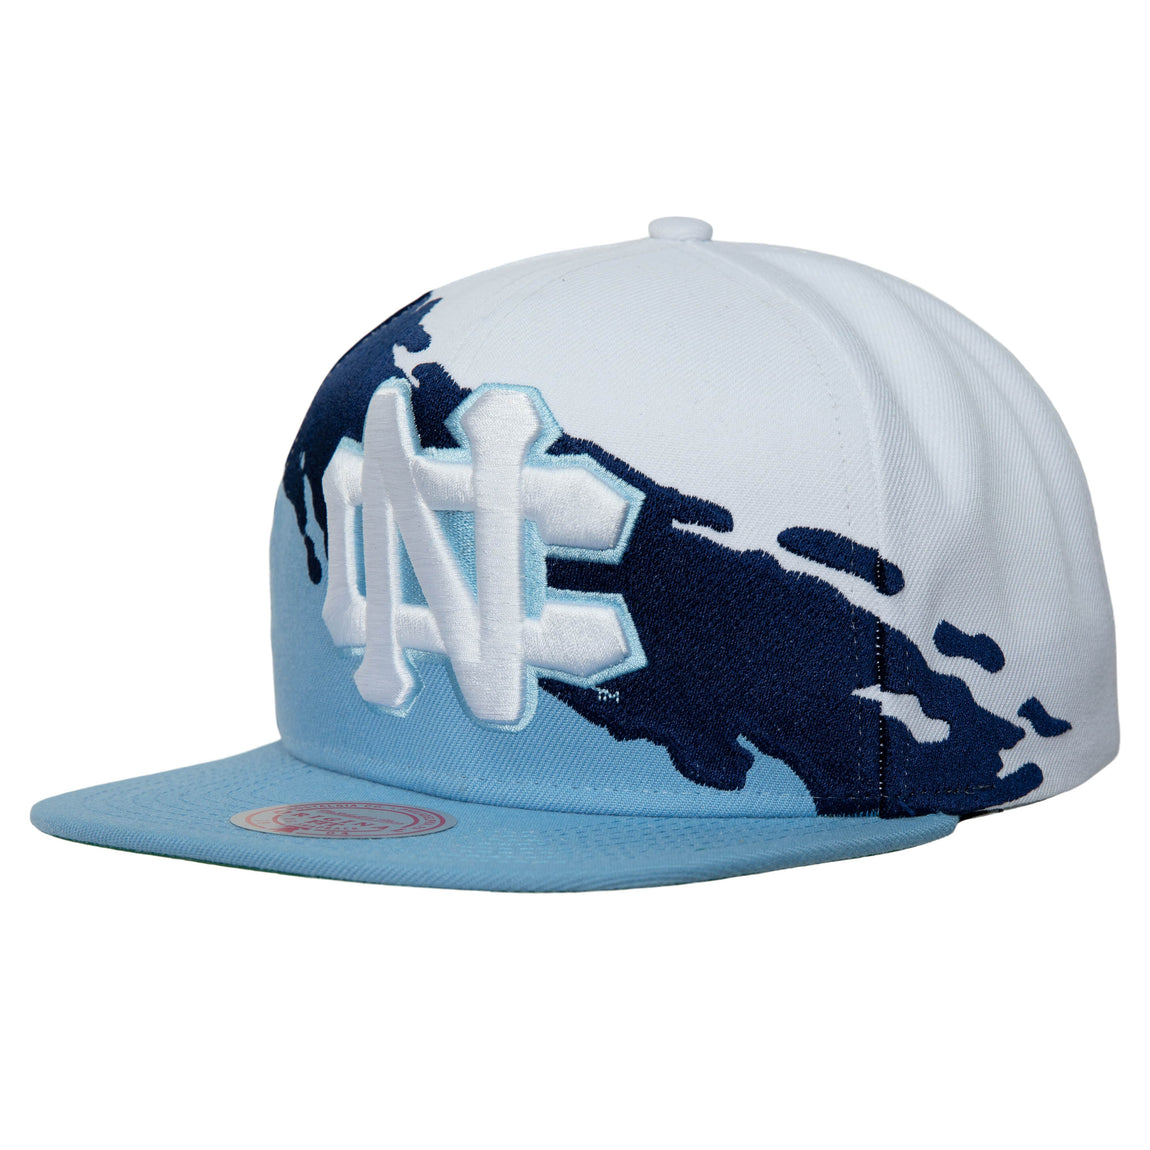 Mitchell & Ness UNC Tarheels NCAA Paintbrush Snapback Hat (White/Blue) - Mitchell & Ness UNC Tarheels NCAA Paintbrush Snapback Hat (White/Blue) - 